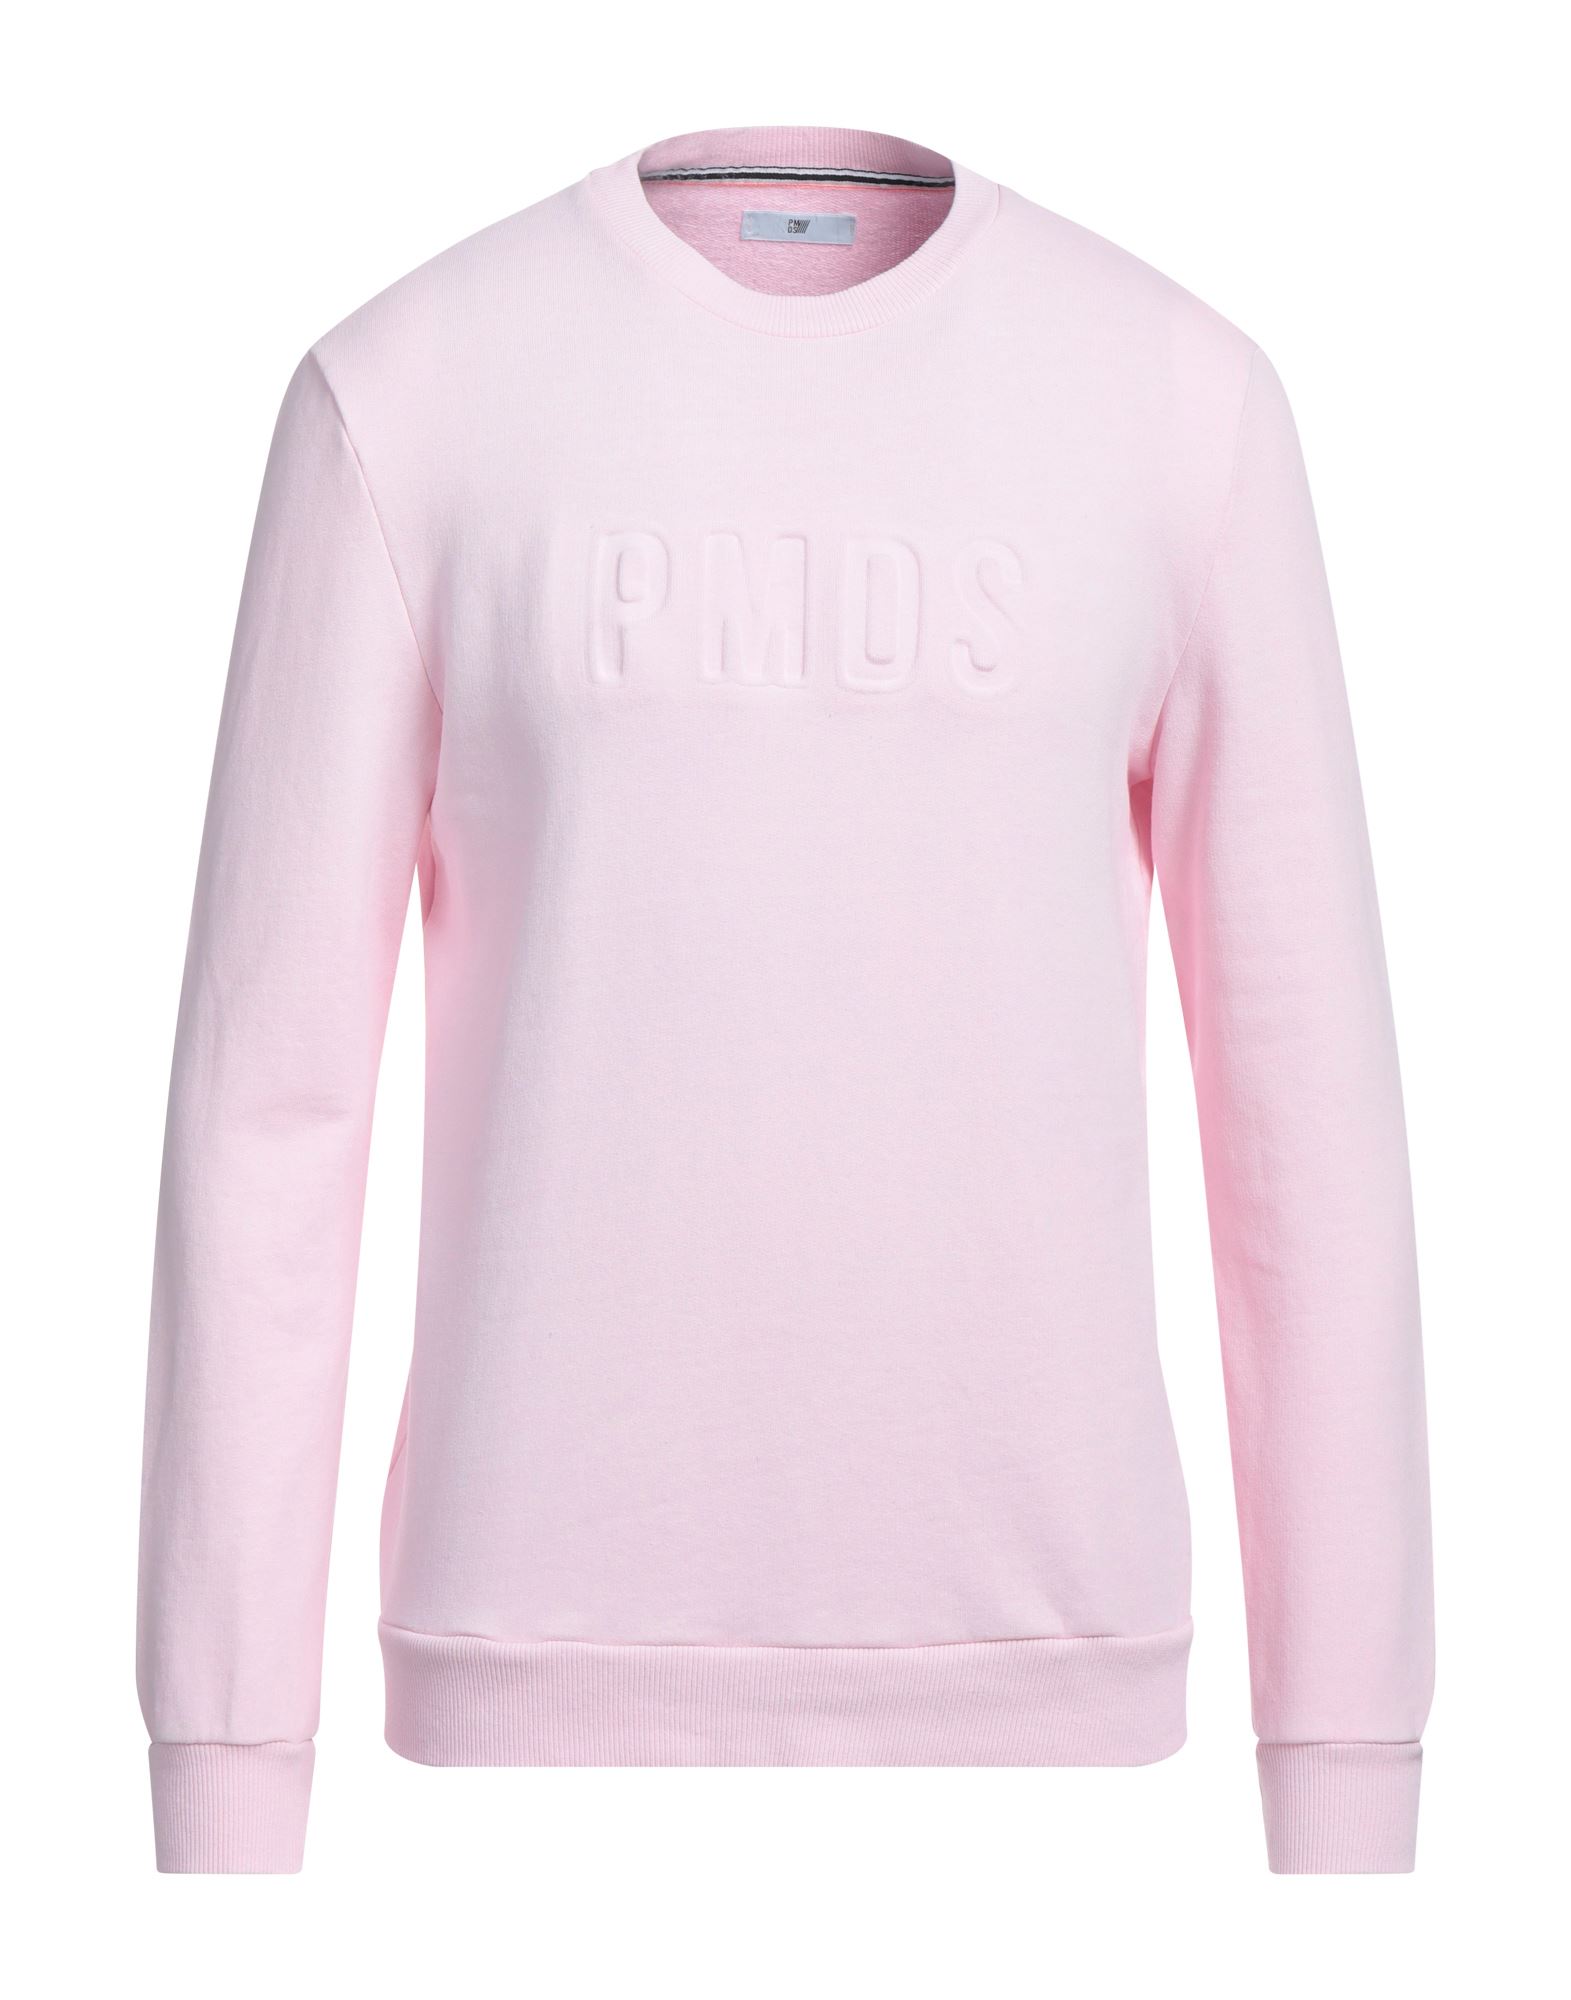 Pmds Premium Mood Denim Superior Sweatshirts In Pink